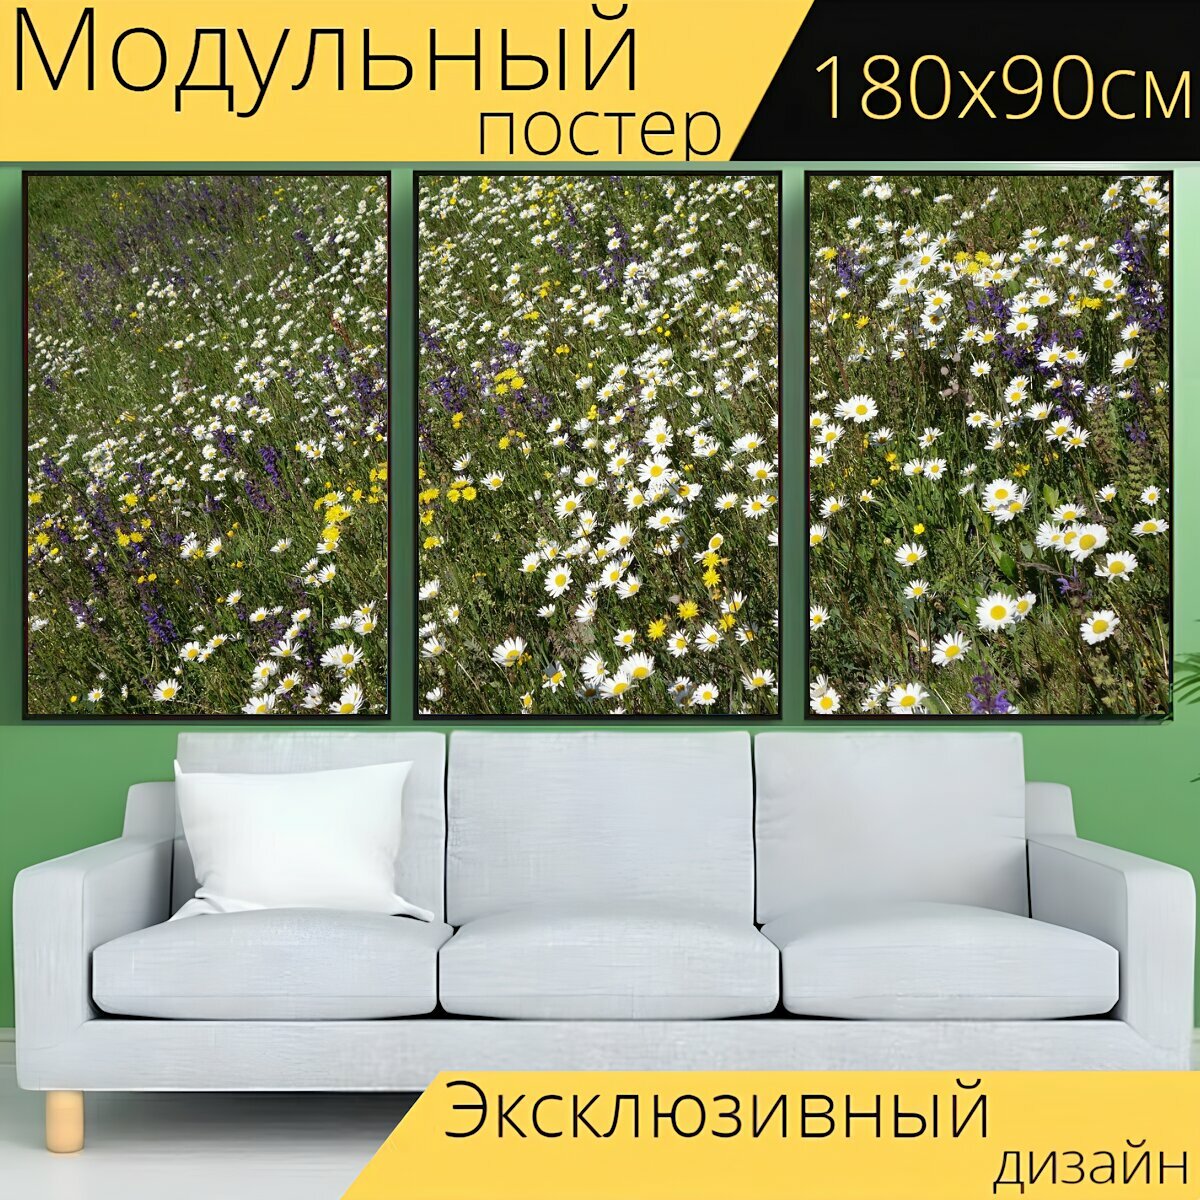 Модульный постер "Цветочный луг, цветок, весна" 180 x 90 см. для интерьера